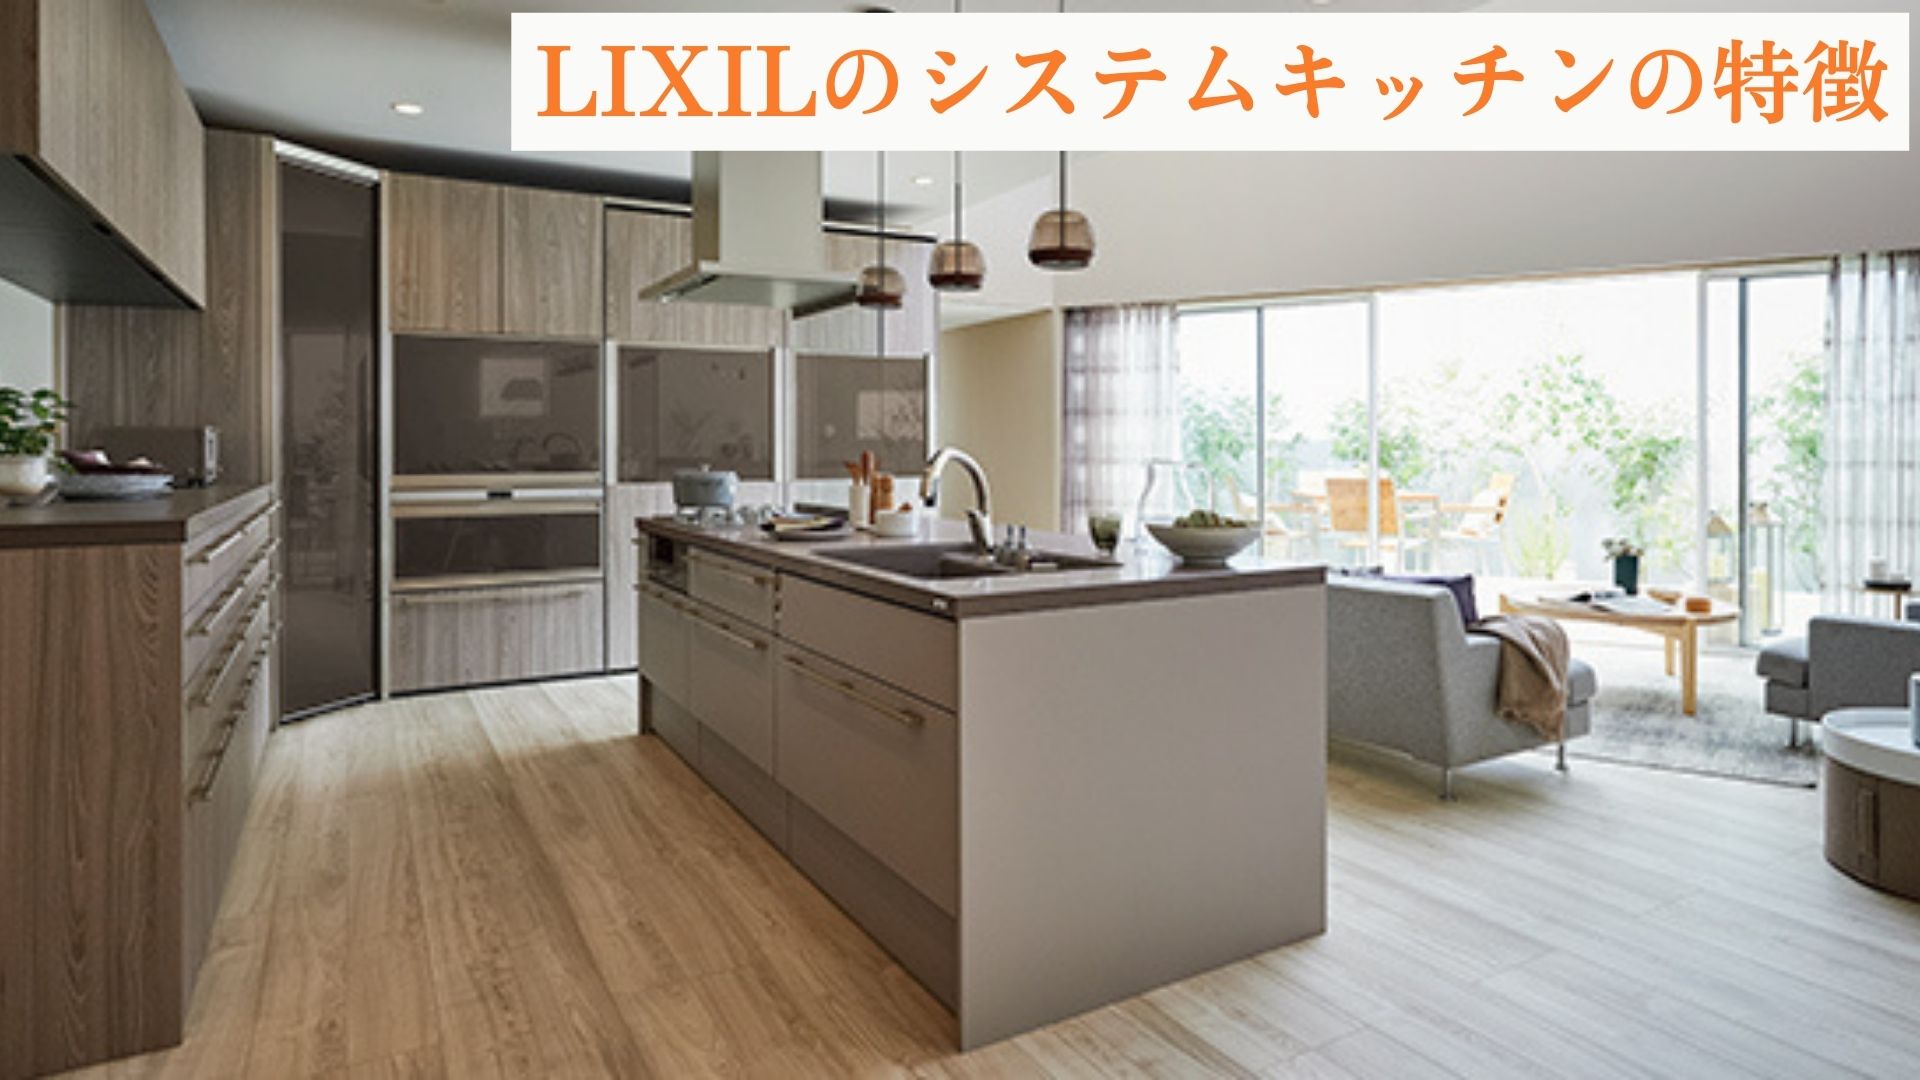 LIXILのシステムキッチンの特徴